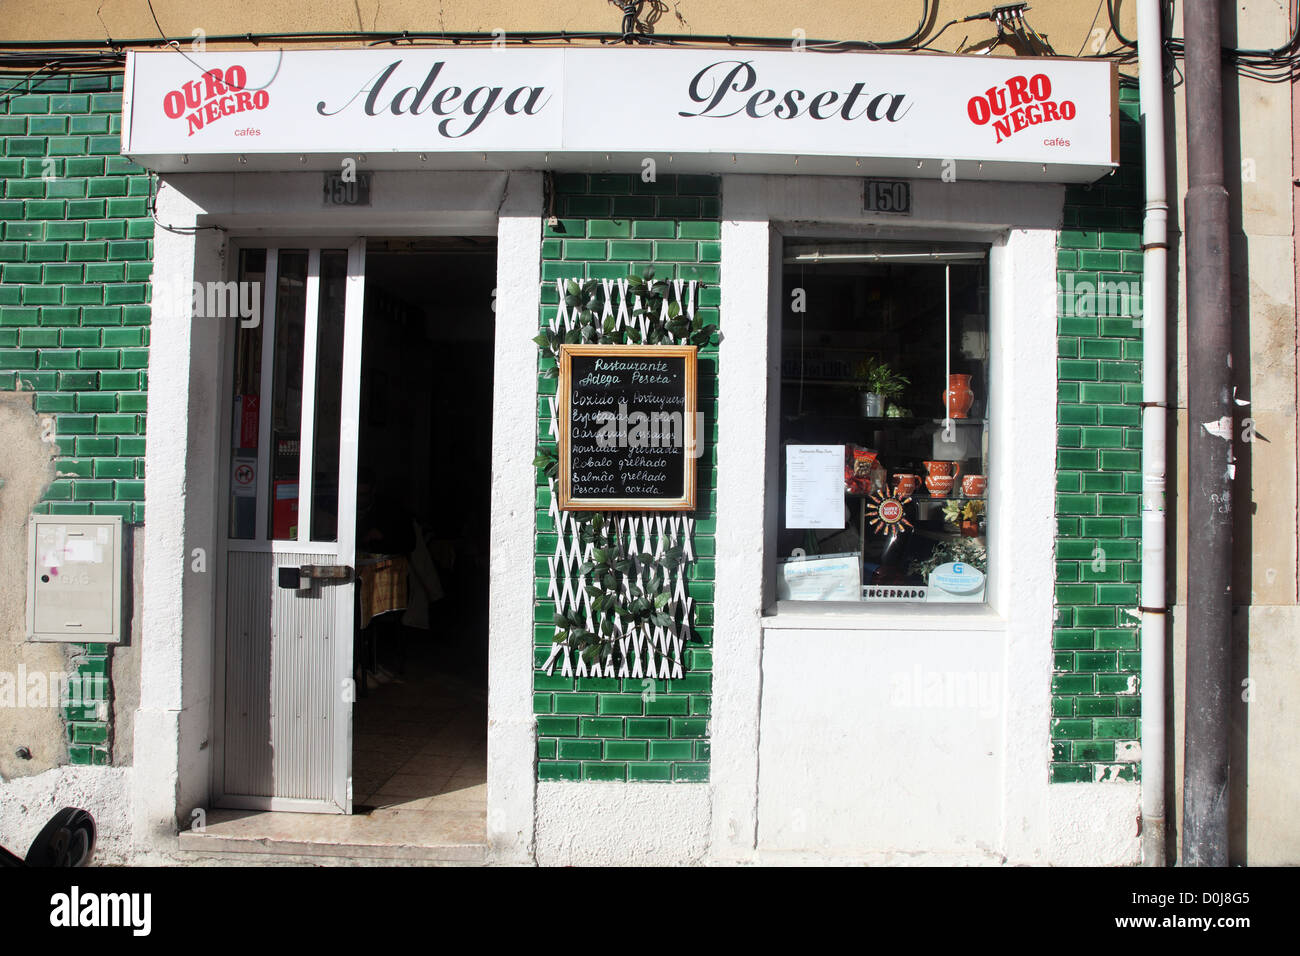 Adega Peseta, Budget-Wein-Bar und Bistro, Lissabon Stockfoto